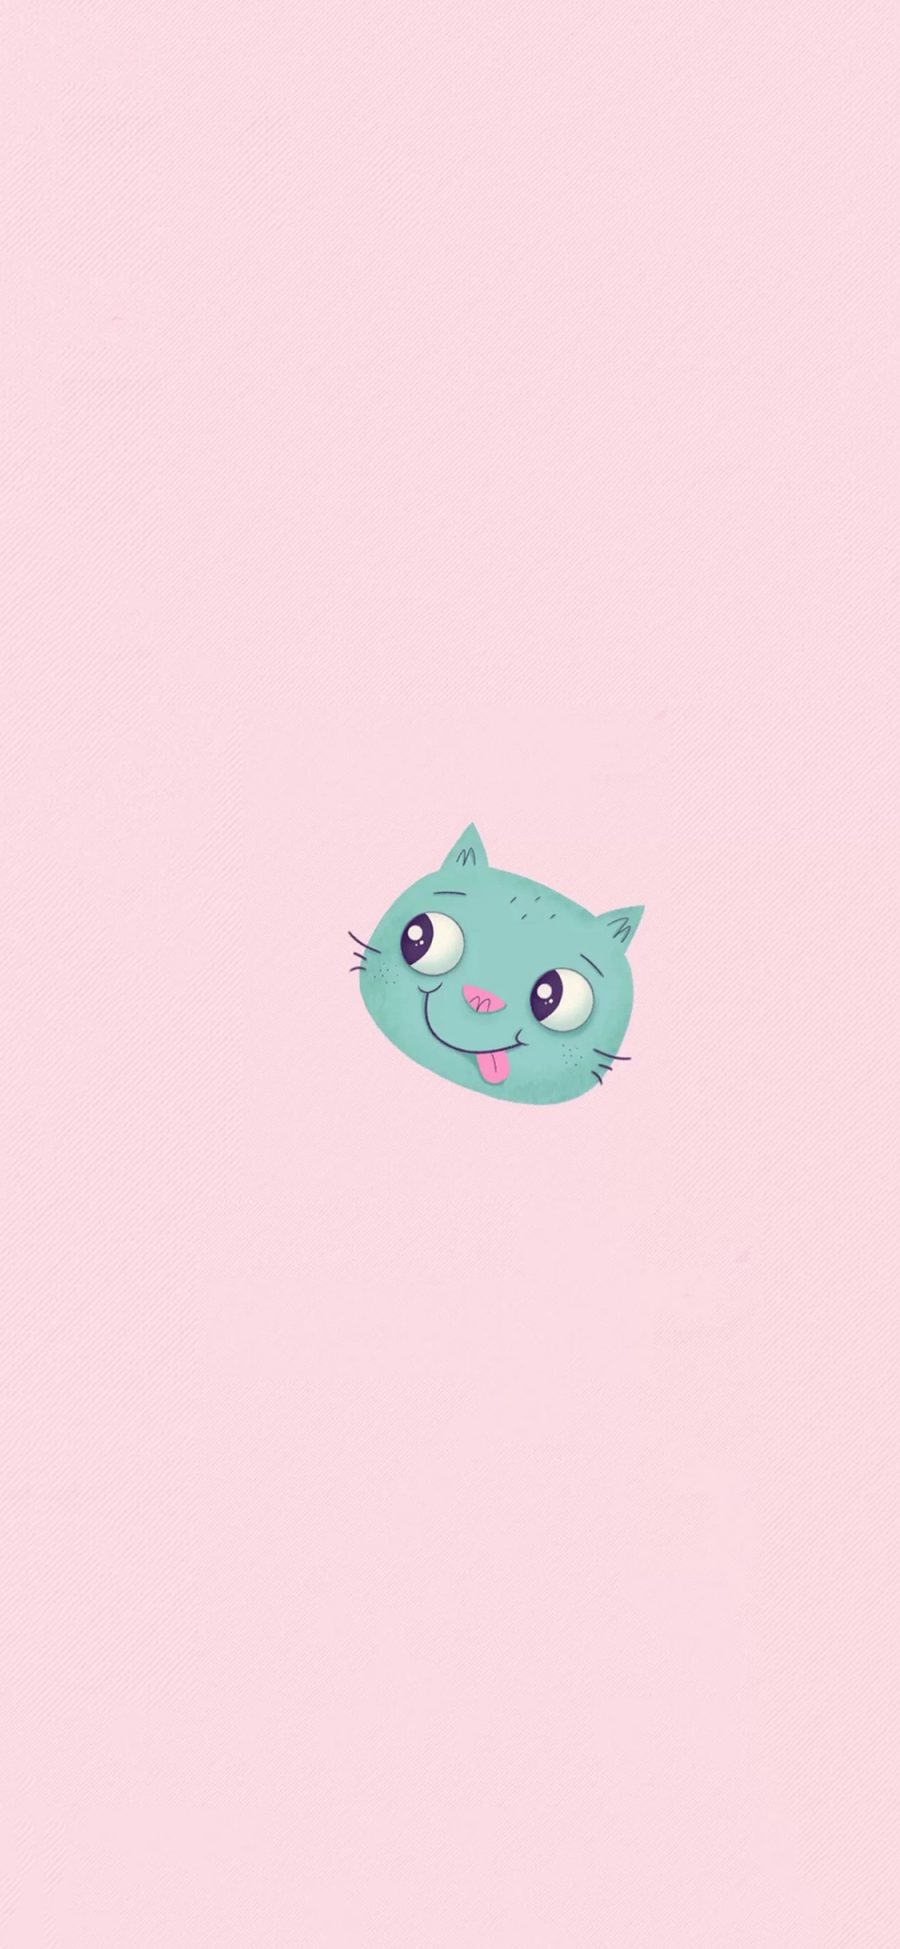 [2436×1125]猫咪 舔舌头 粉色 可爱 卡通 苹果手机动漫壁纸图片